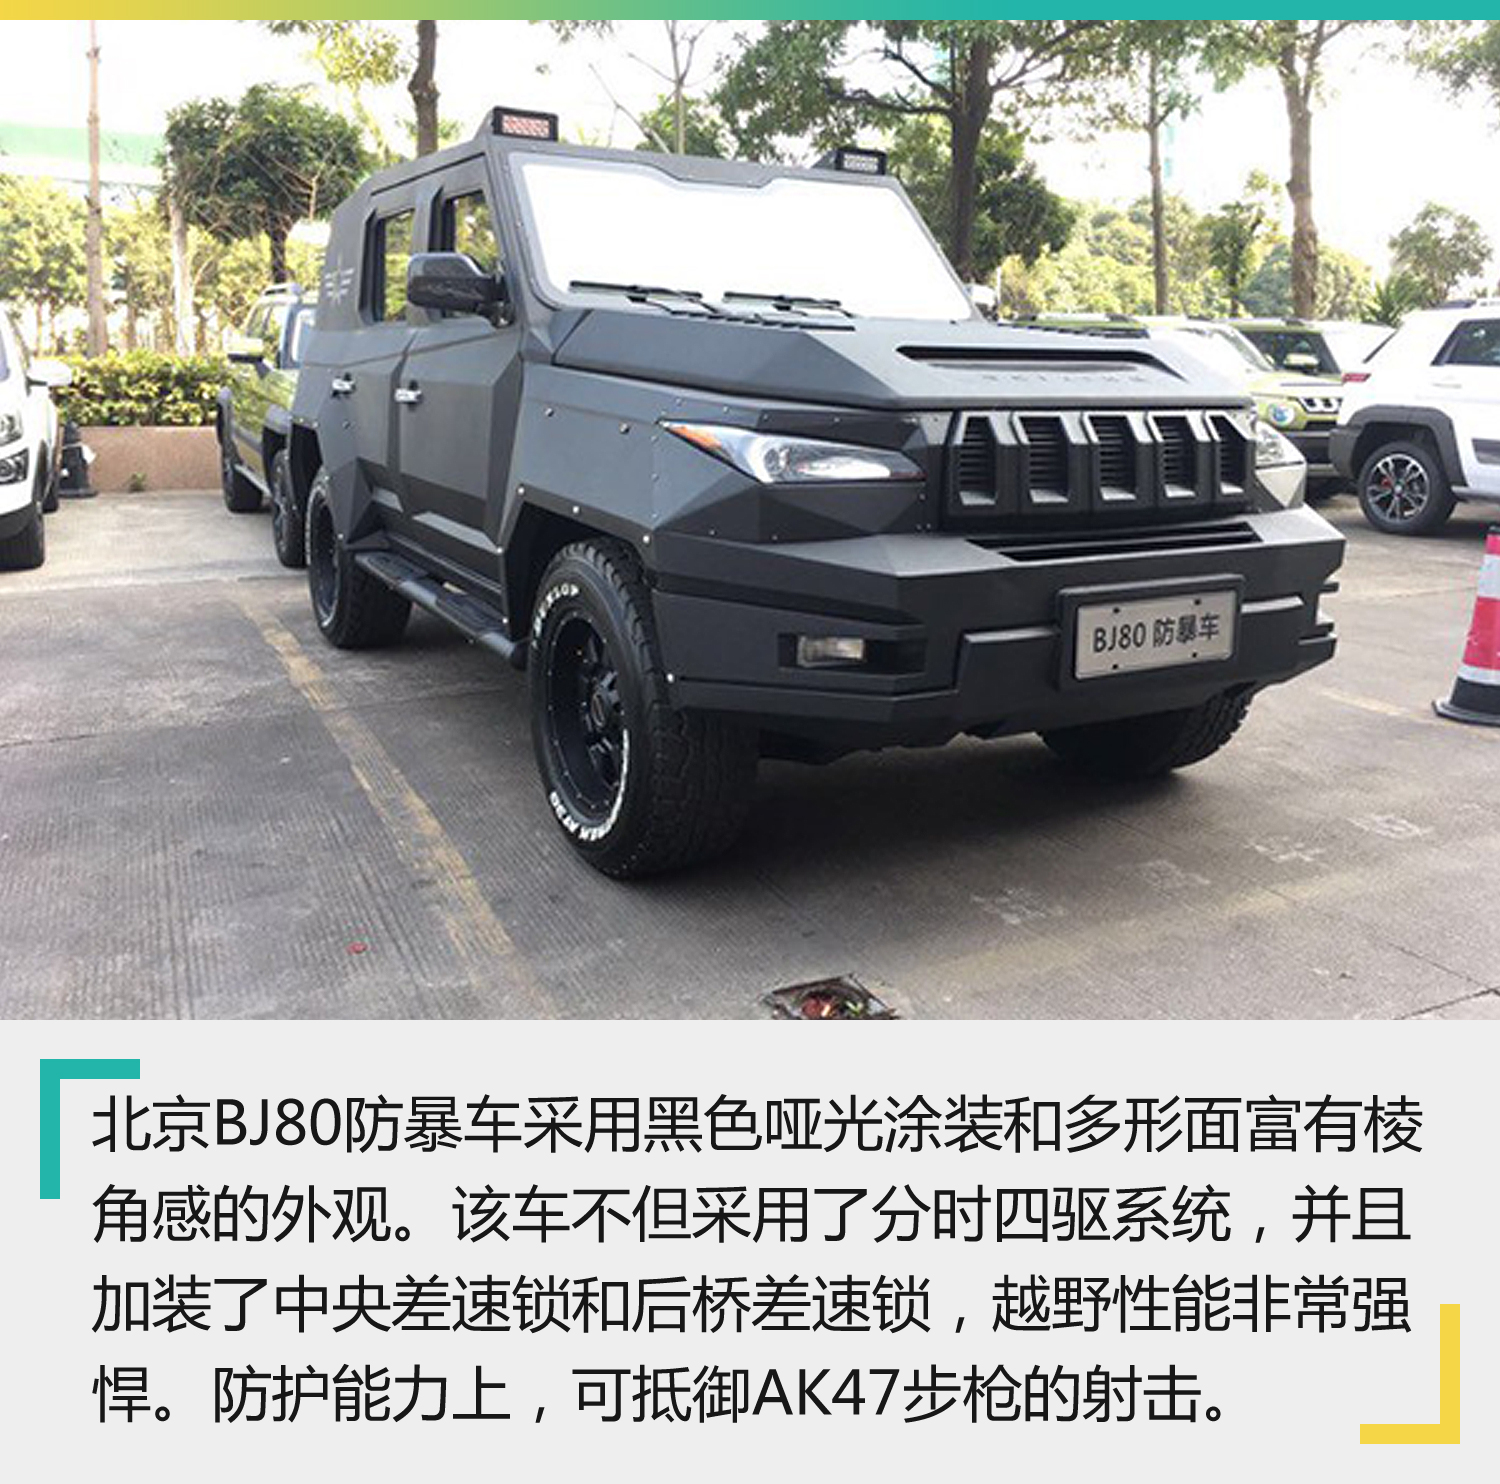 上来看,北京bj80防暴车便是一款针对军警防暴人员而打造的防弹汽车